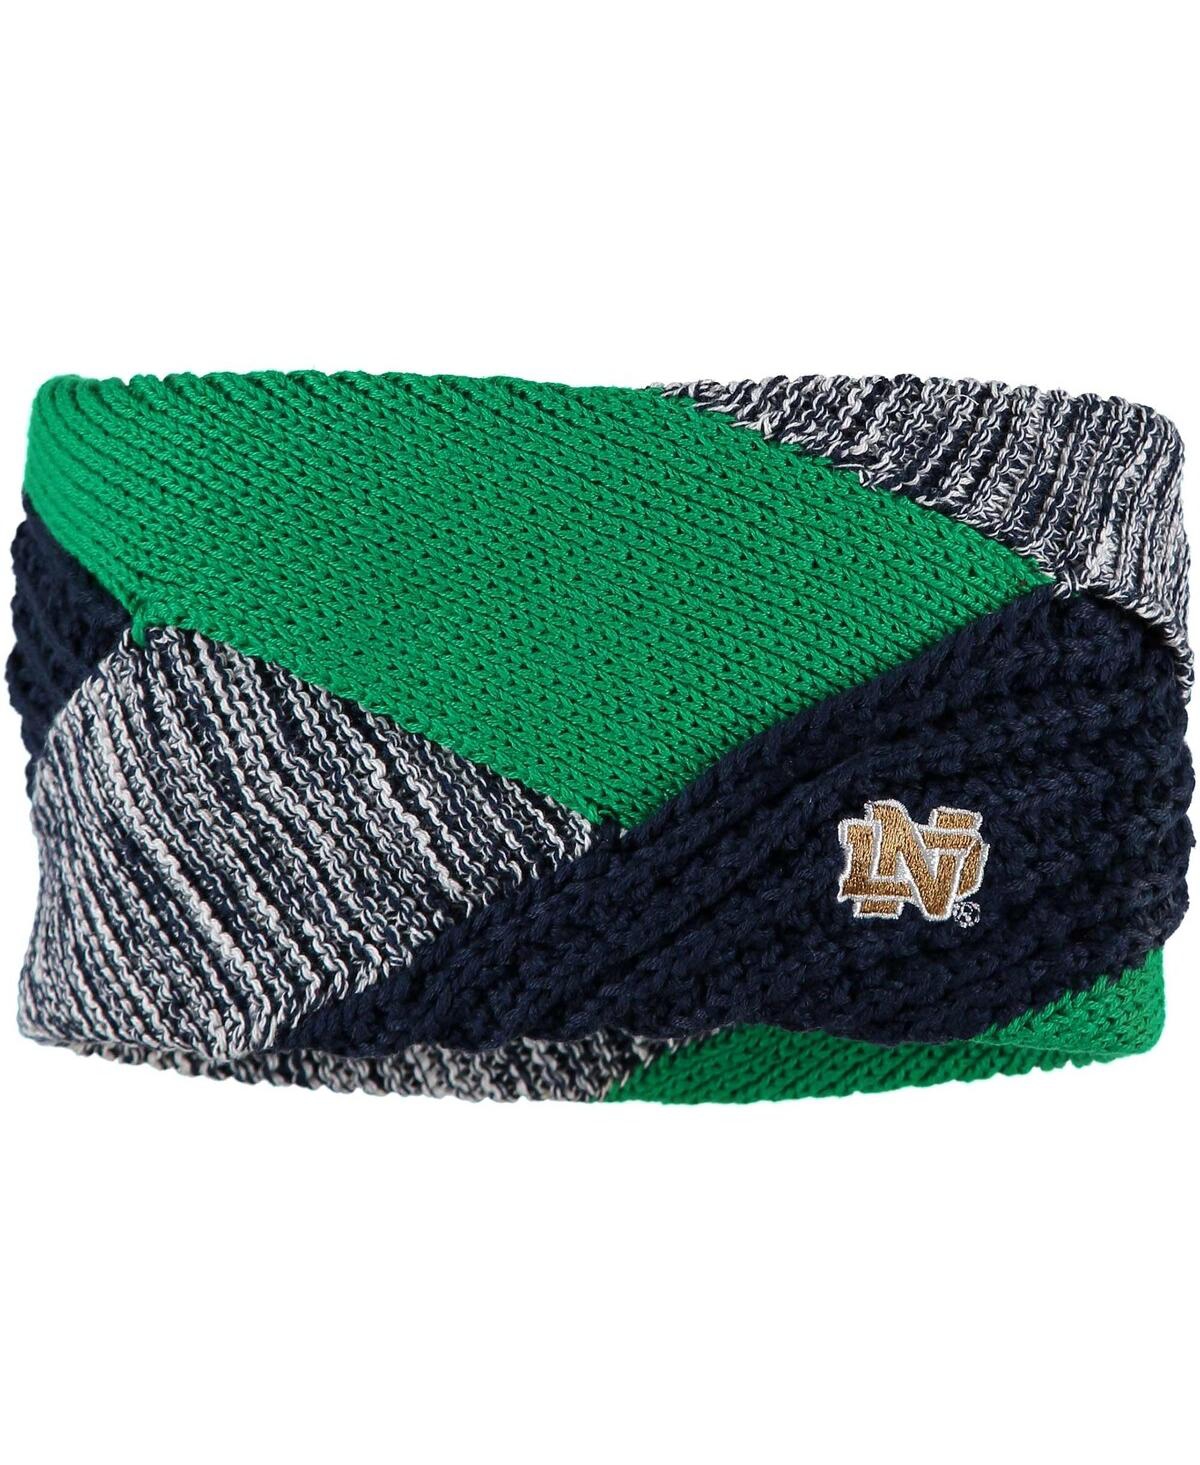 Zoozatz Women's  Notre Dame Fighting Irish Criss Cross Headband In Green